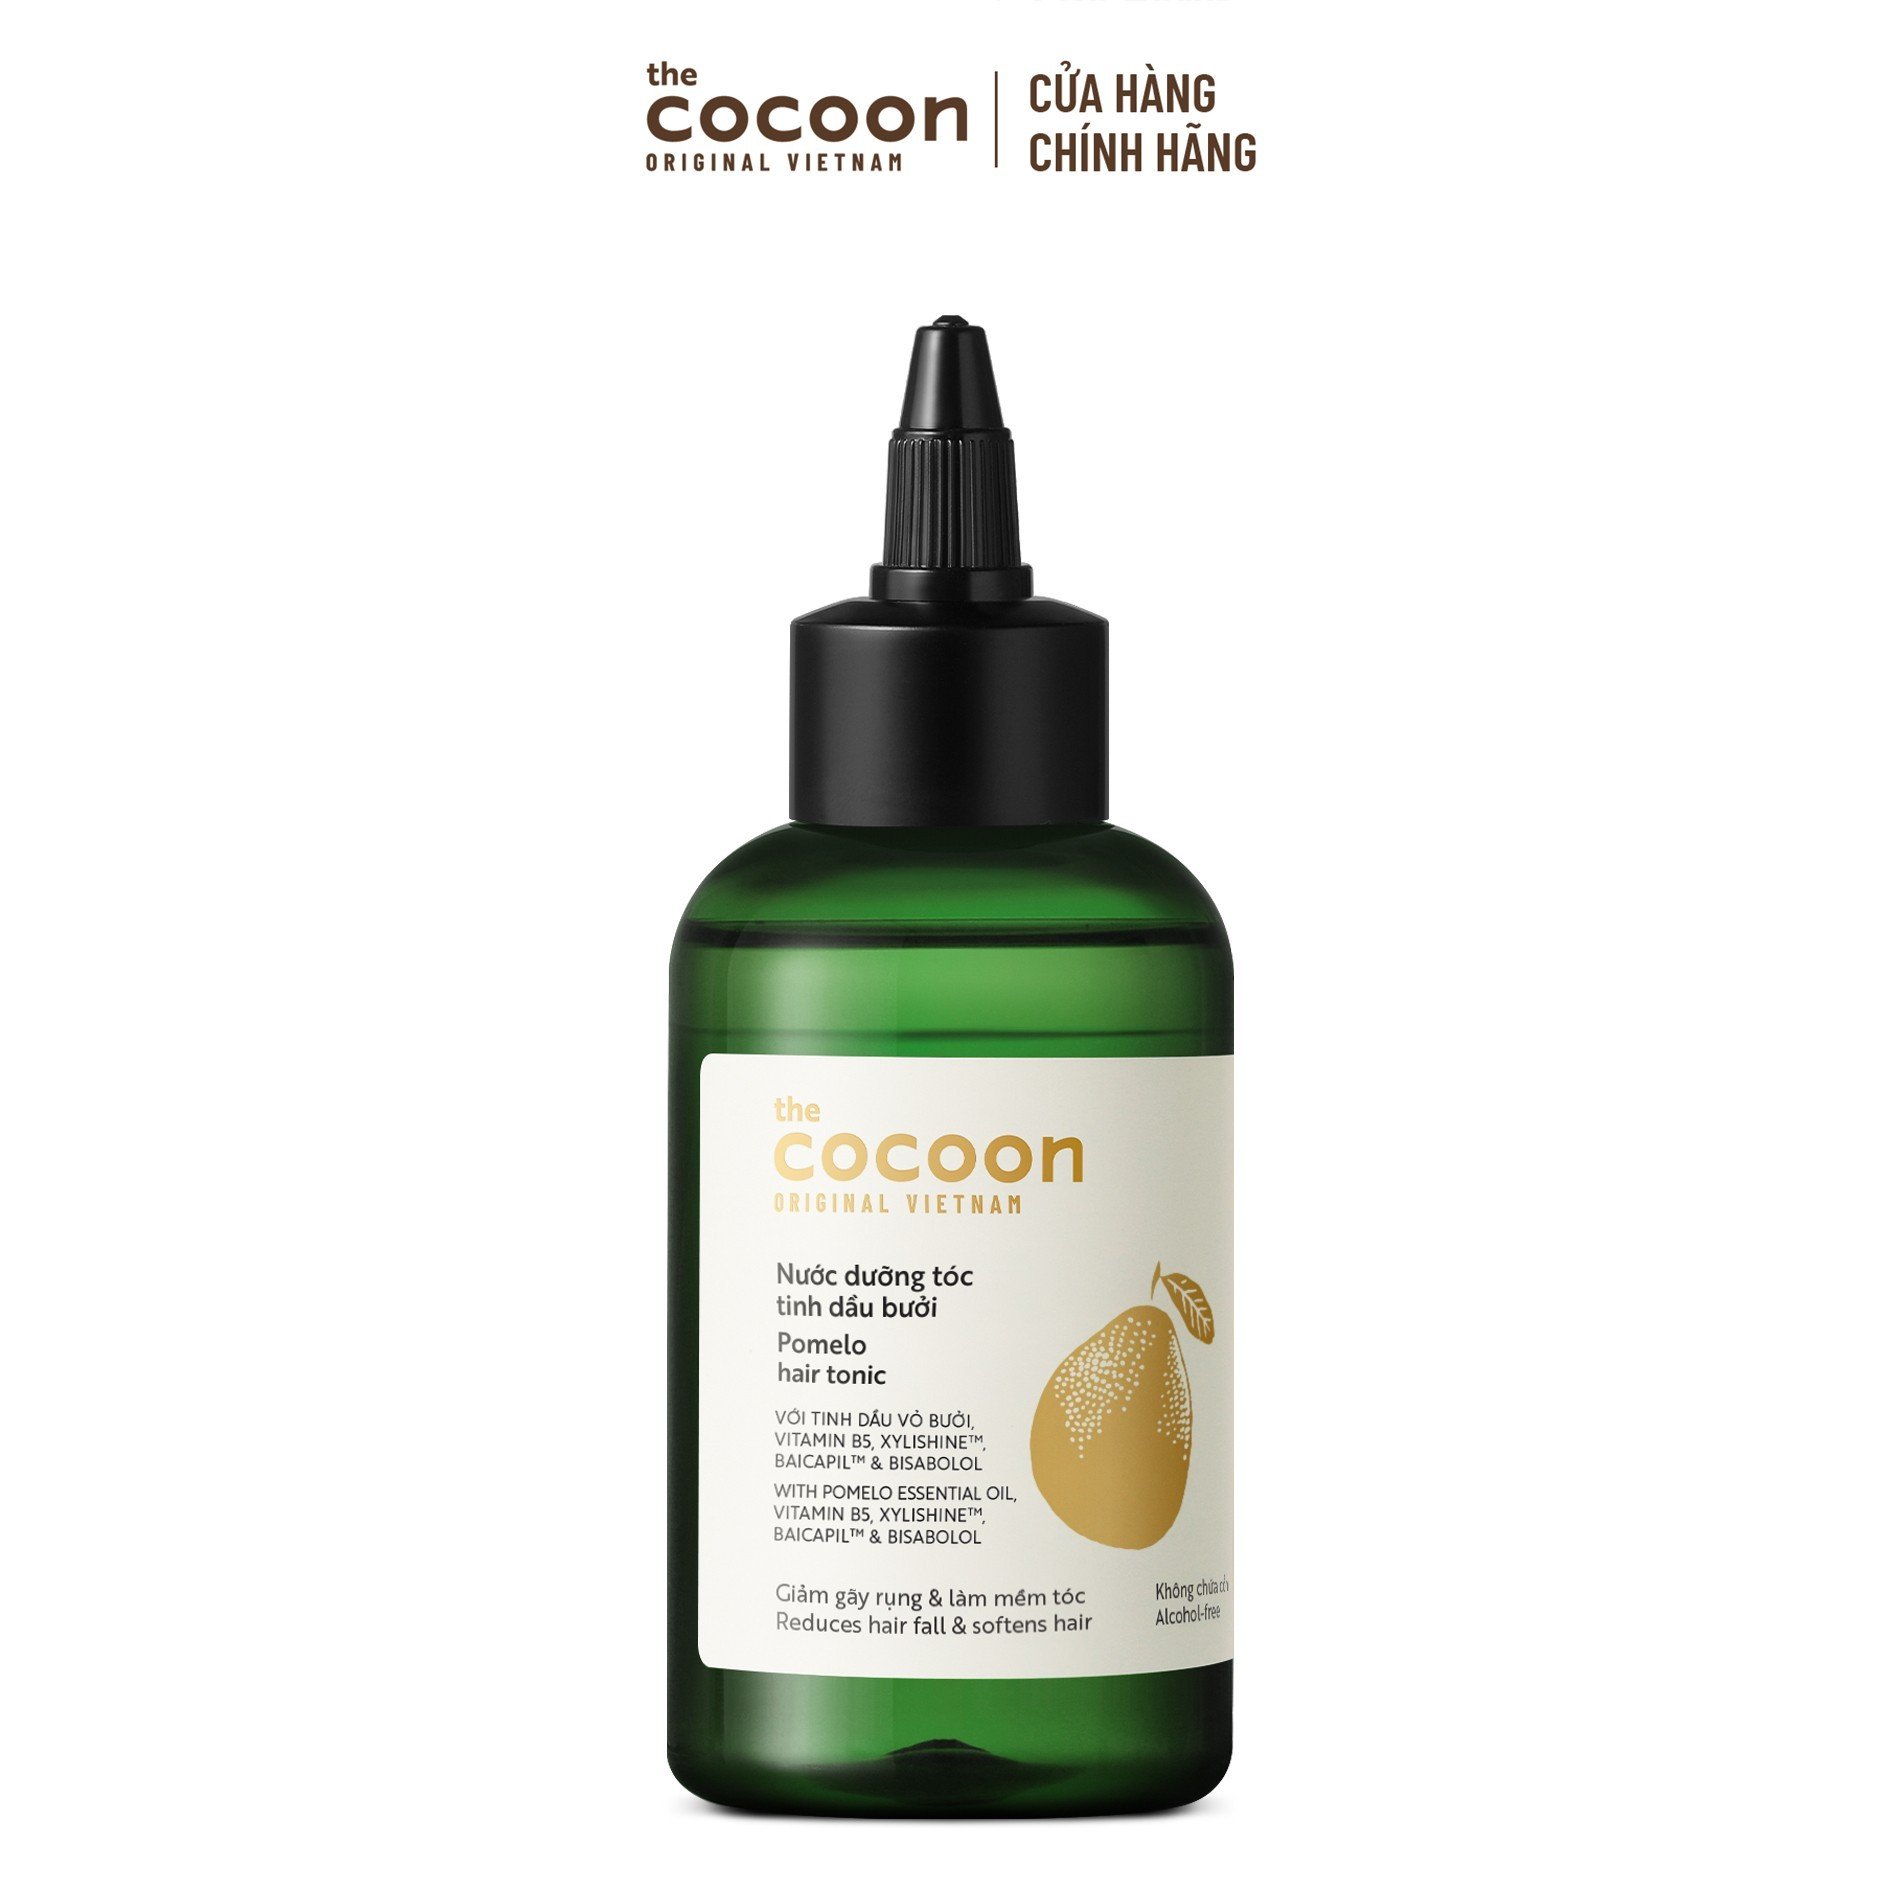 Nước dưỡng tóc tinh dầu bưởi Cocoon - phiên bản nâng cấp 140ml